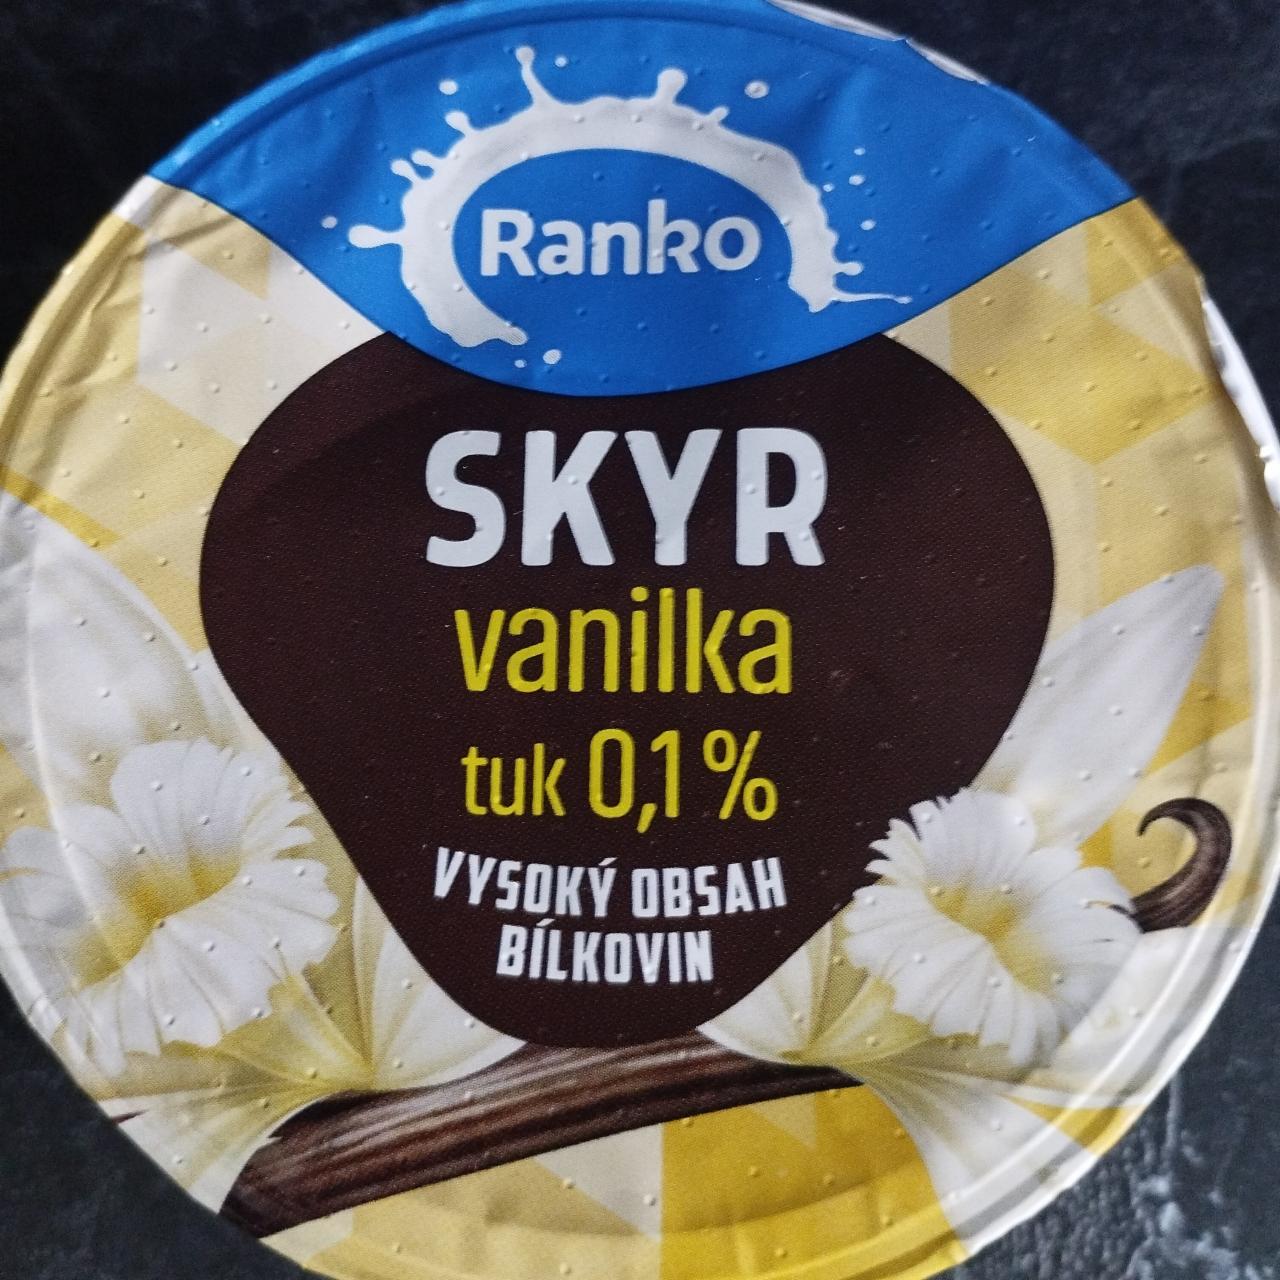 Fotografie - Skyr vanilka tuk 0,1% Ranko